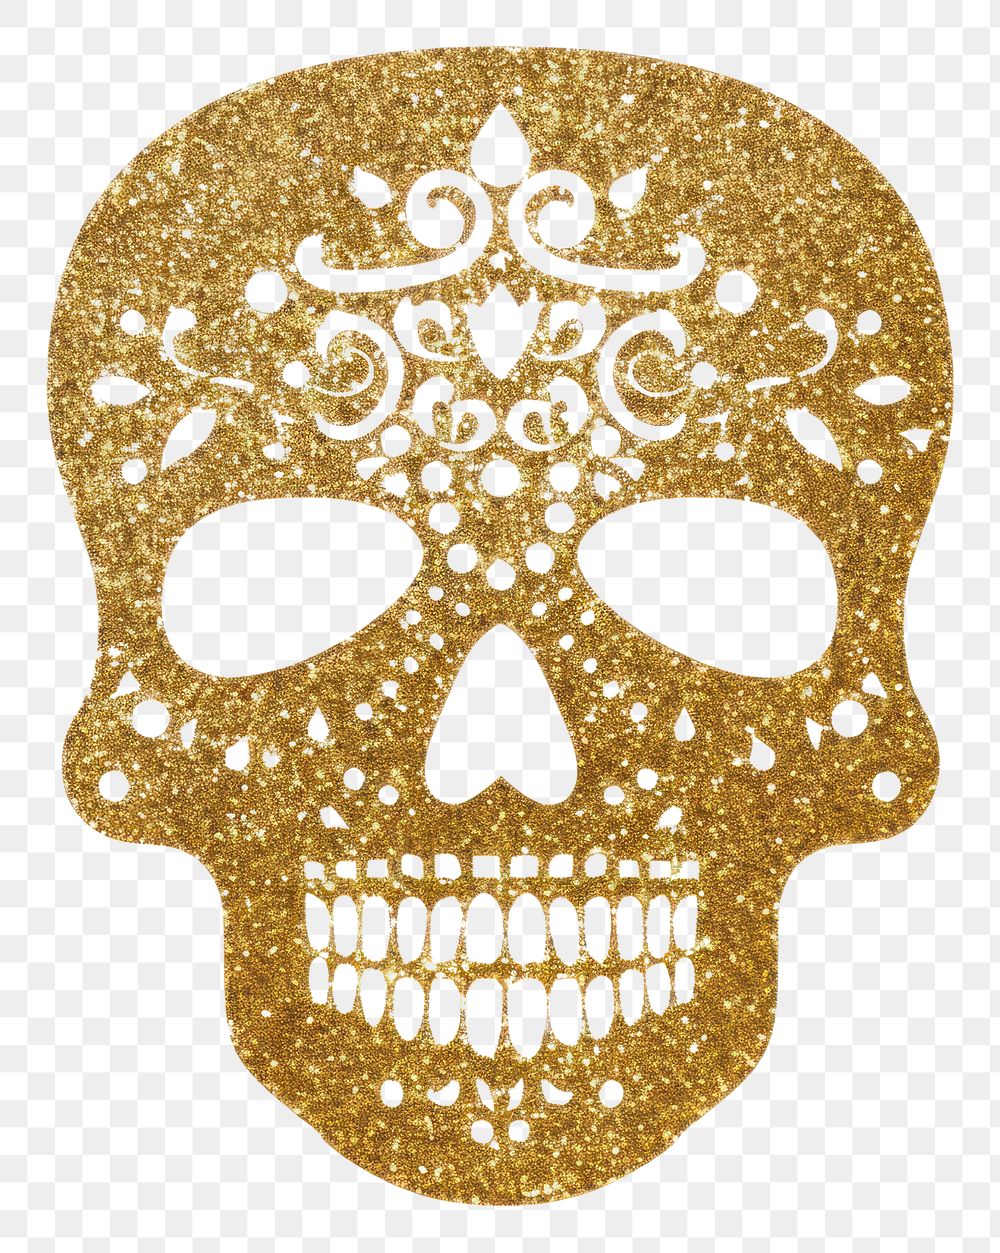 PNG Golden skull icon mask white background bling-bling.